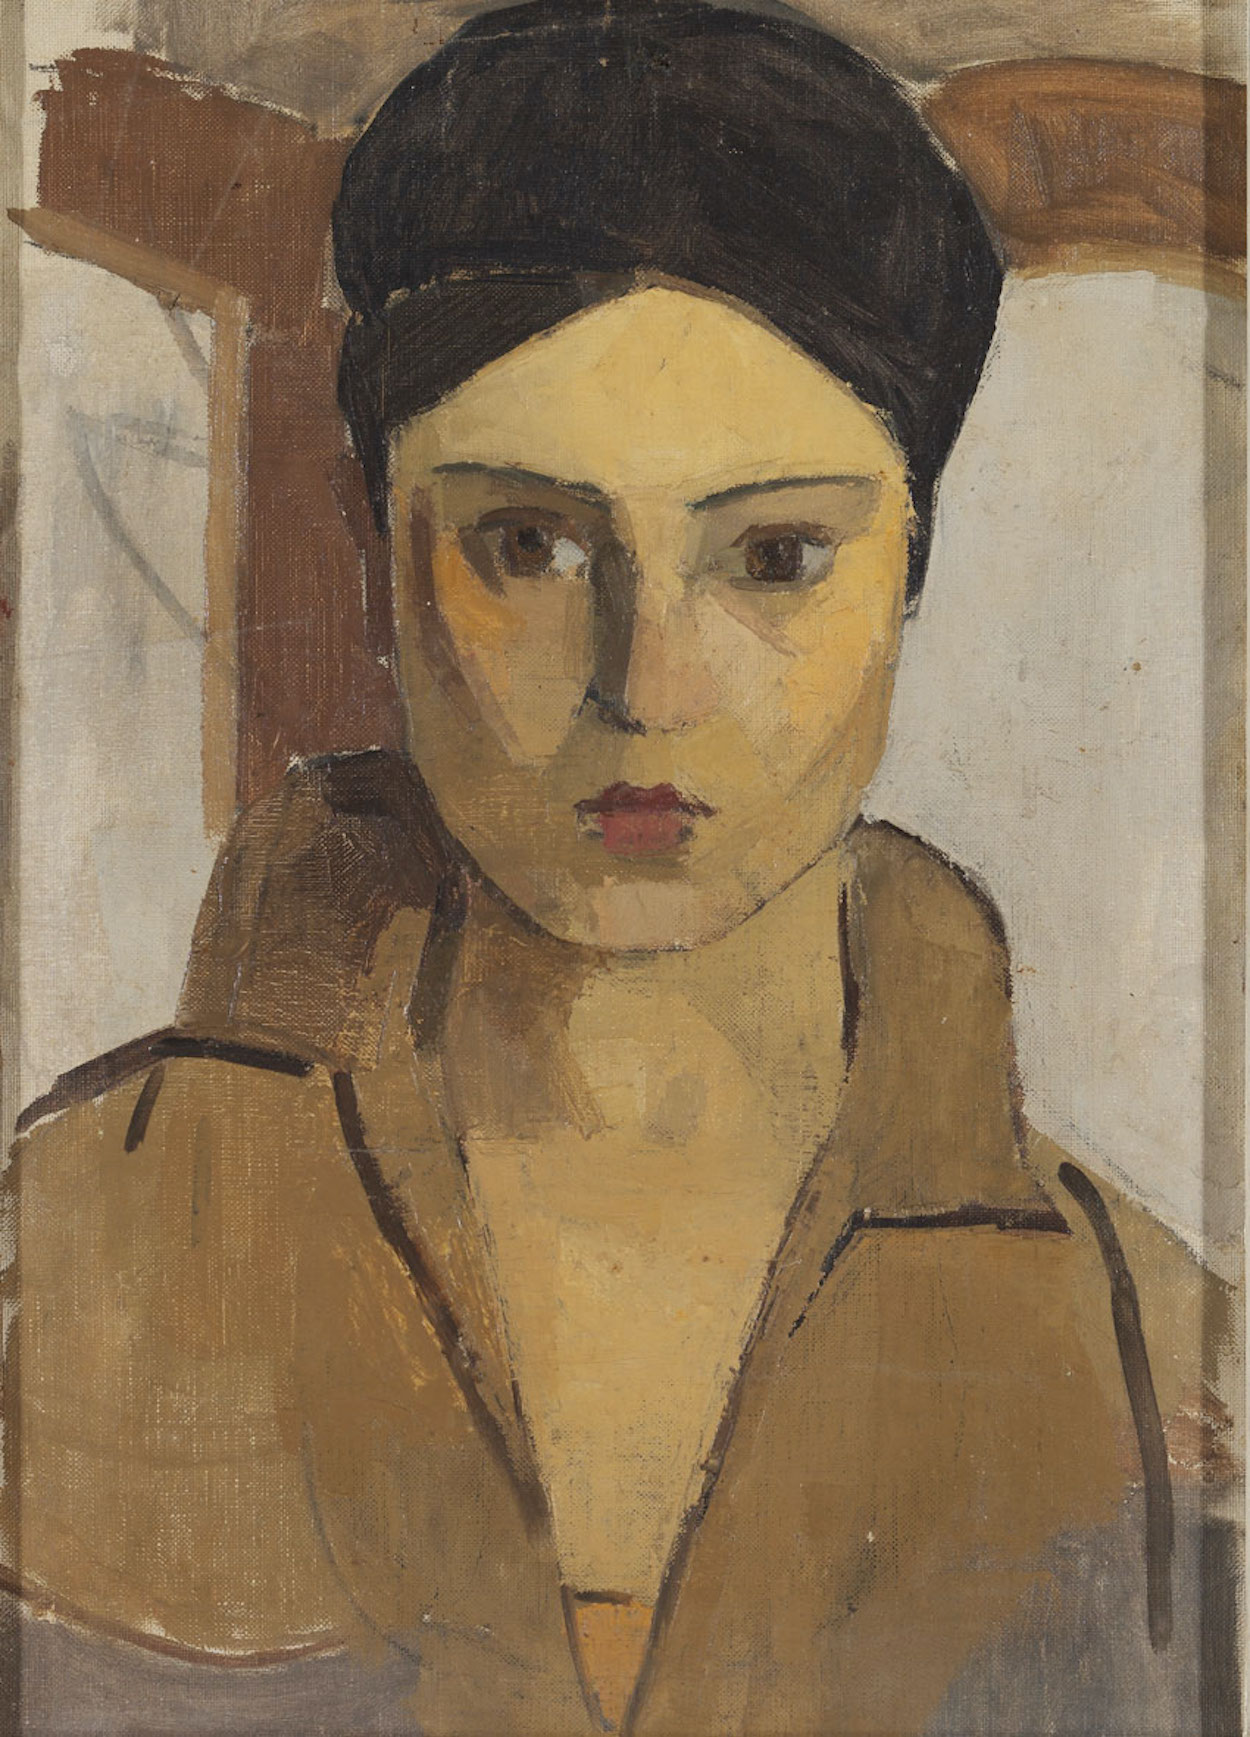 Autoportrait by Hale Asaf - Années 1920 - 90 x 72 cm collection privée